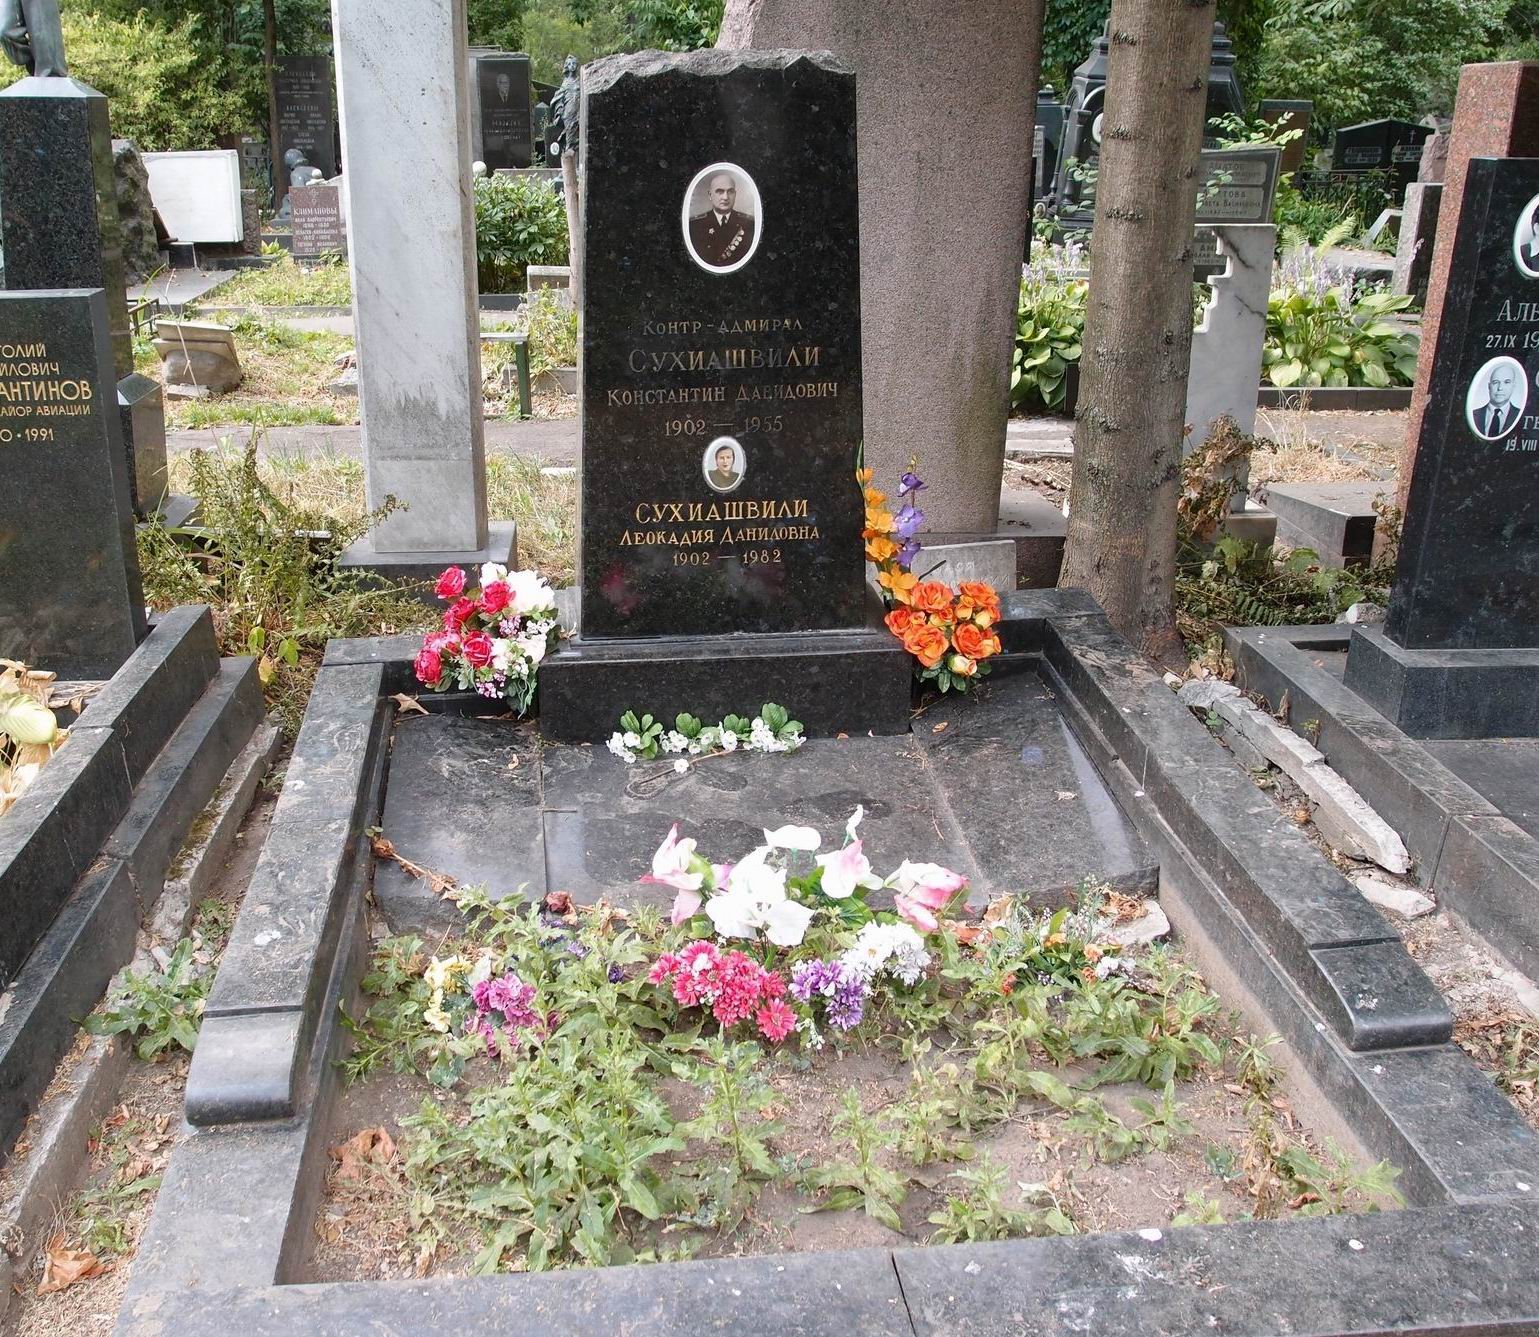 Памятник на могиле Сухиашвили К.Д. (1902-1955), на Новодевичьем кладбище (4-28-16).